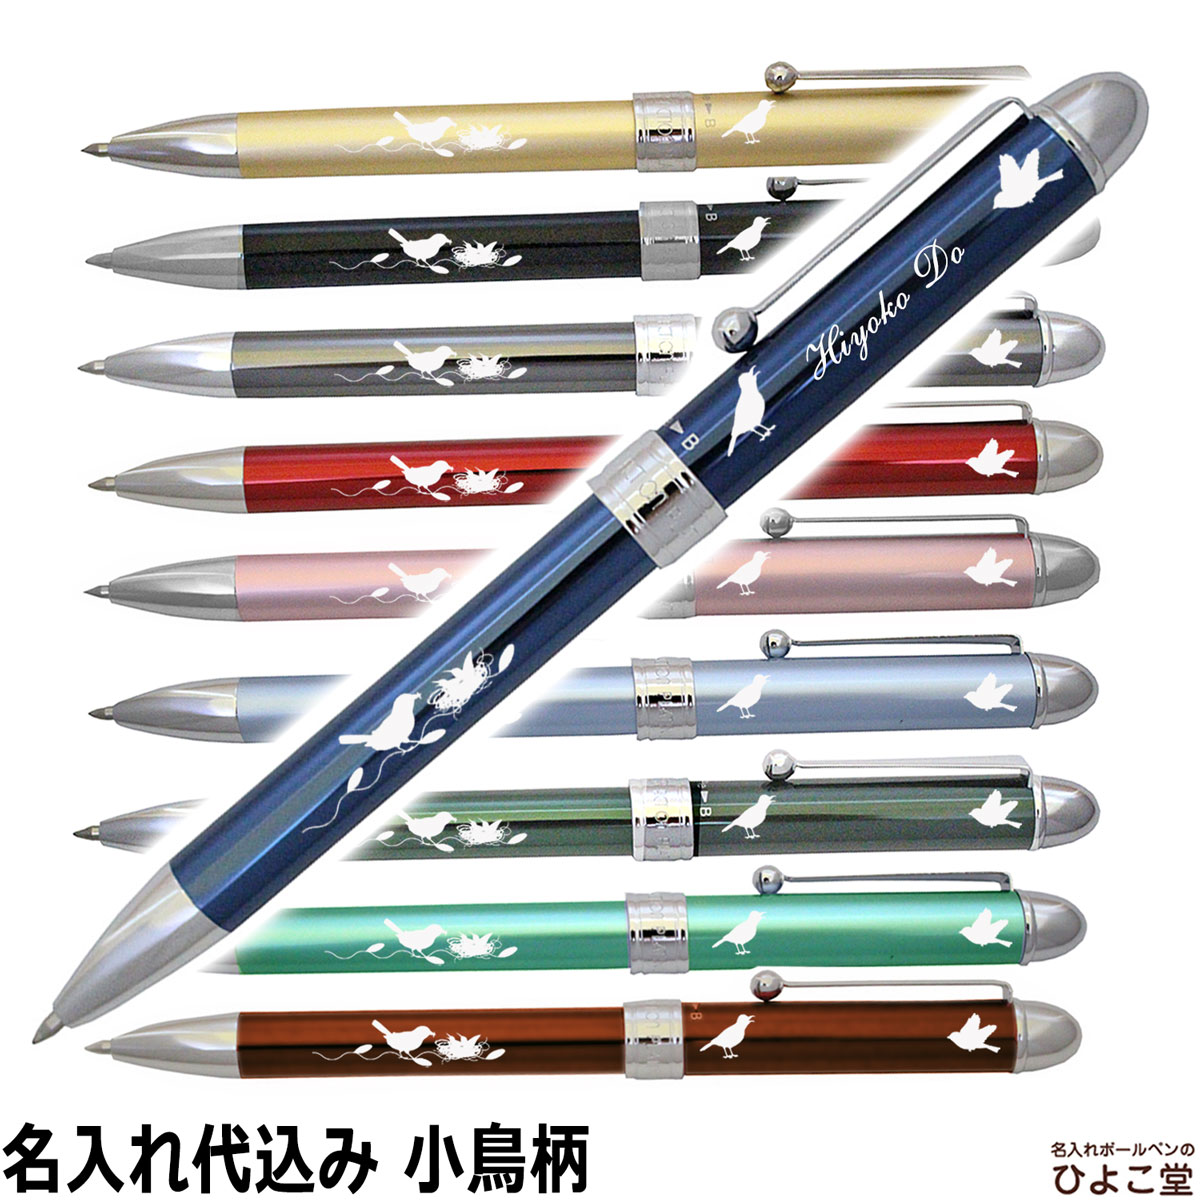 将来の 種をまく 動機付ける ボールペン シャーペン 名 入れ fujisawastyle.jp